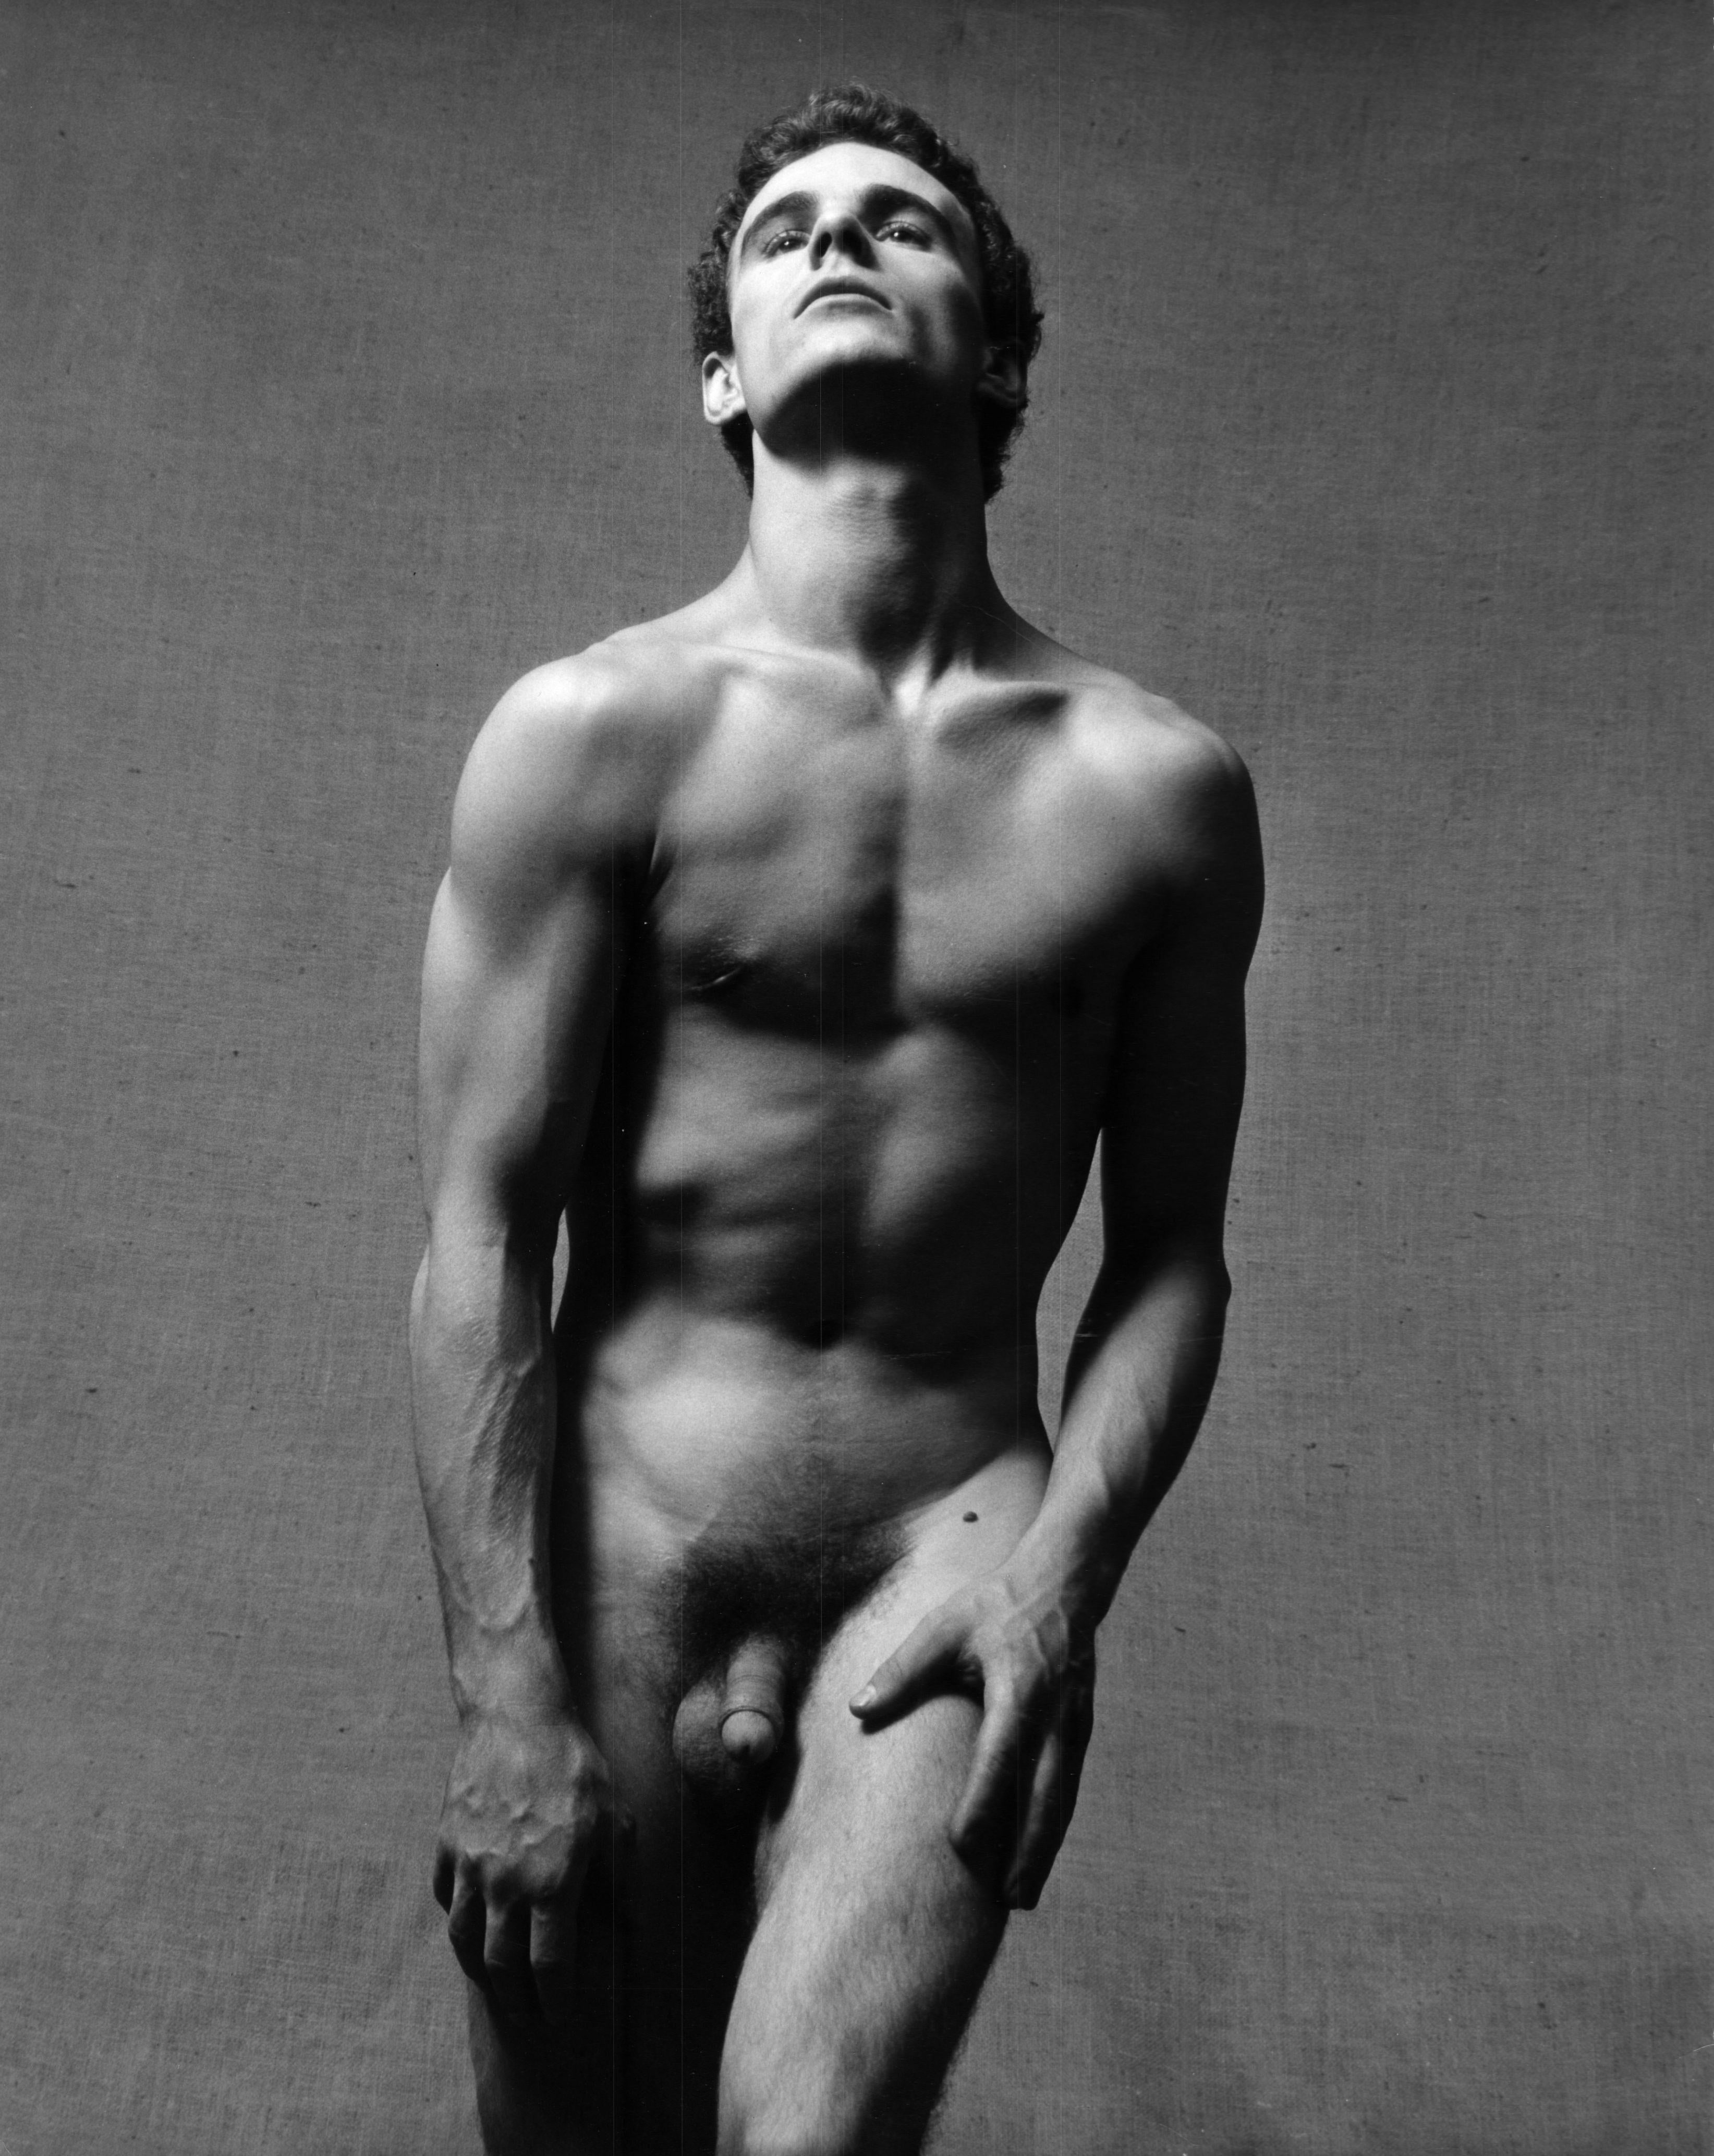 Dancer Steven-Jan Hoff photographed nude for After Dark magazine